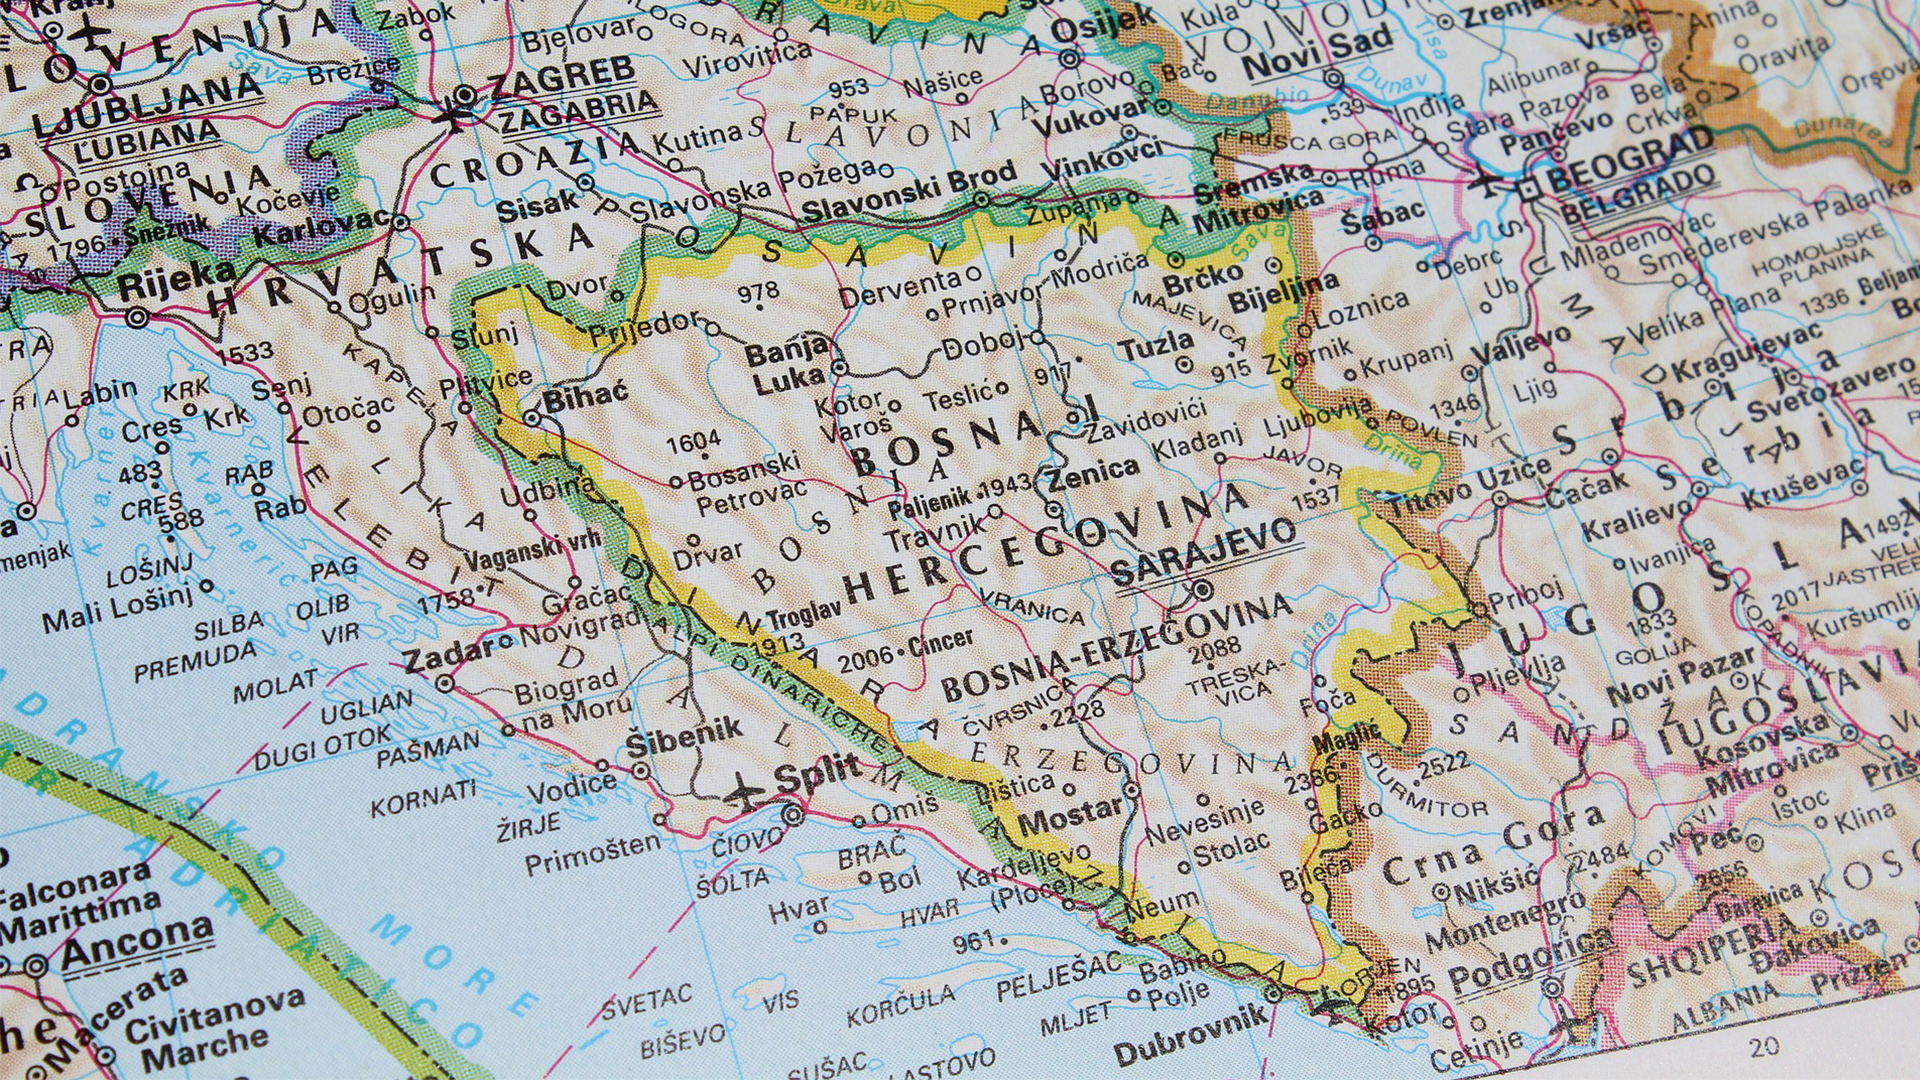 Karte von Bosnien und Herzegowina